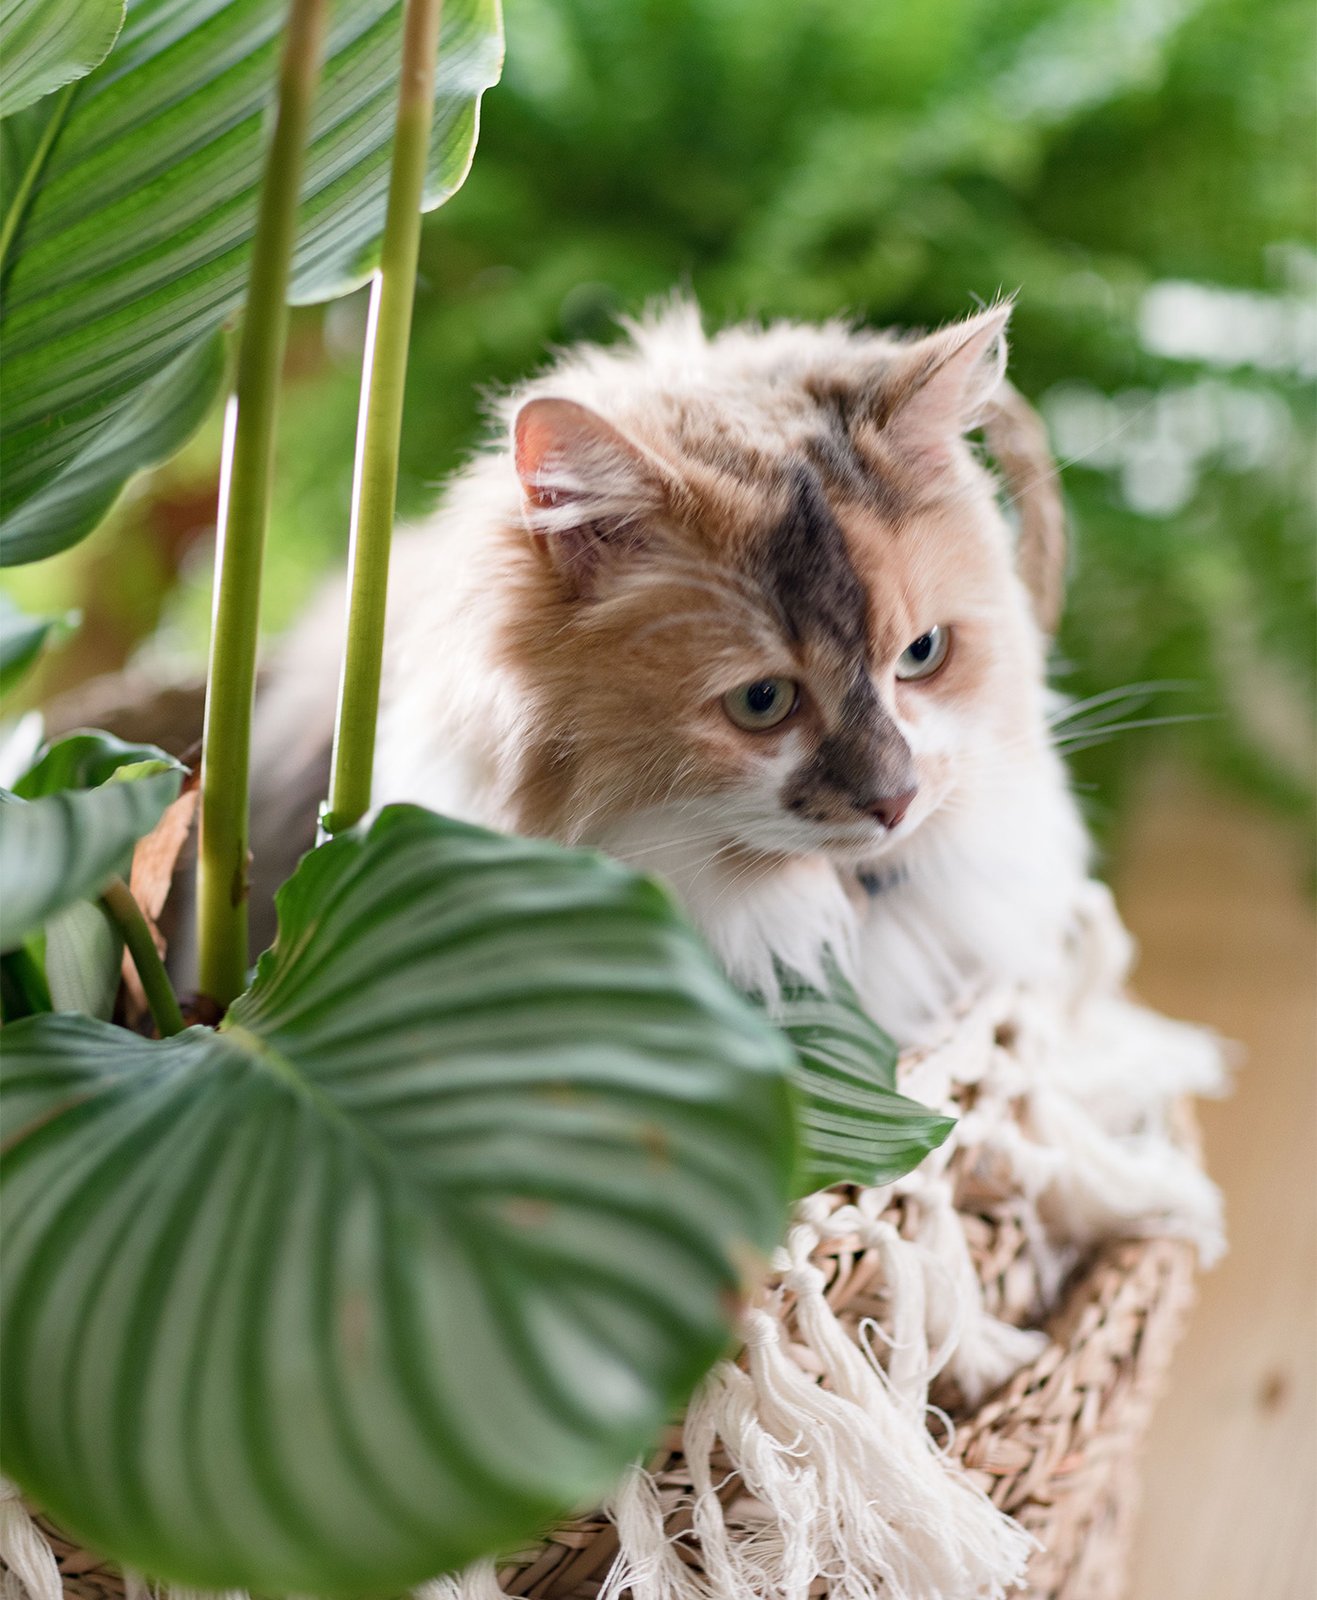 Un chat caché dans son panier derrière une plante